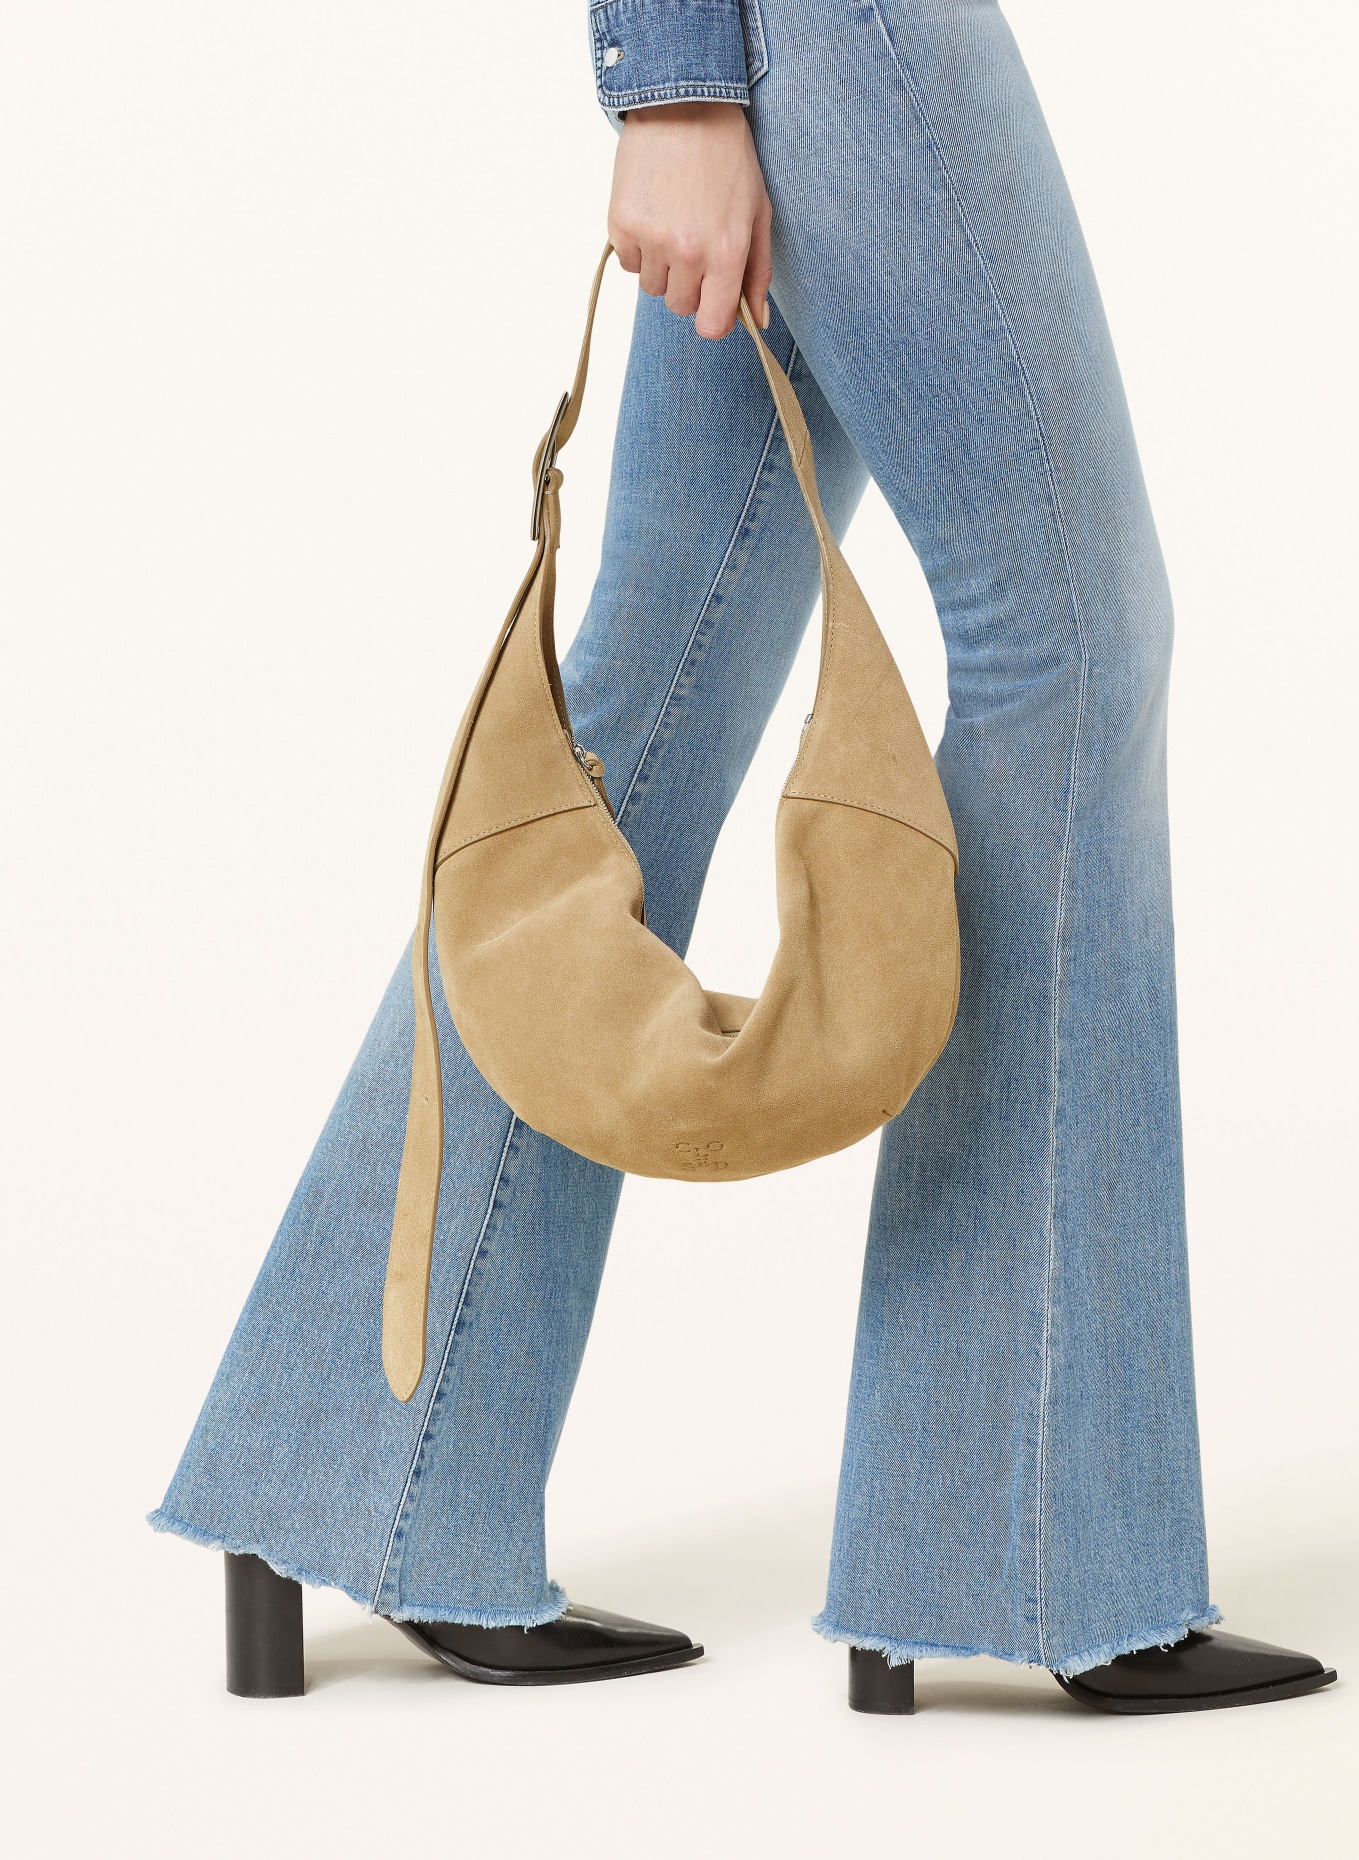 THE.NIM STANDARD Flared jeans KYLIE, Color: W837-VLG LIGHT BLUE (Image 5)